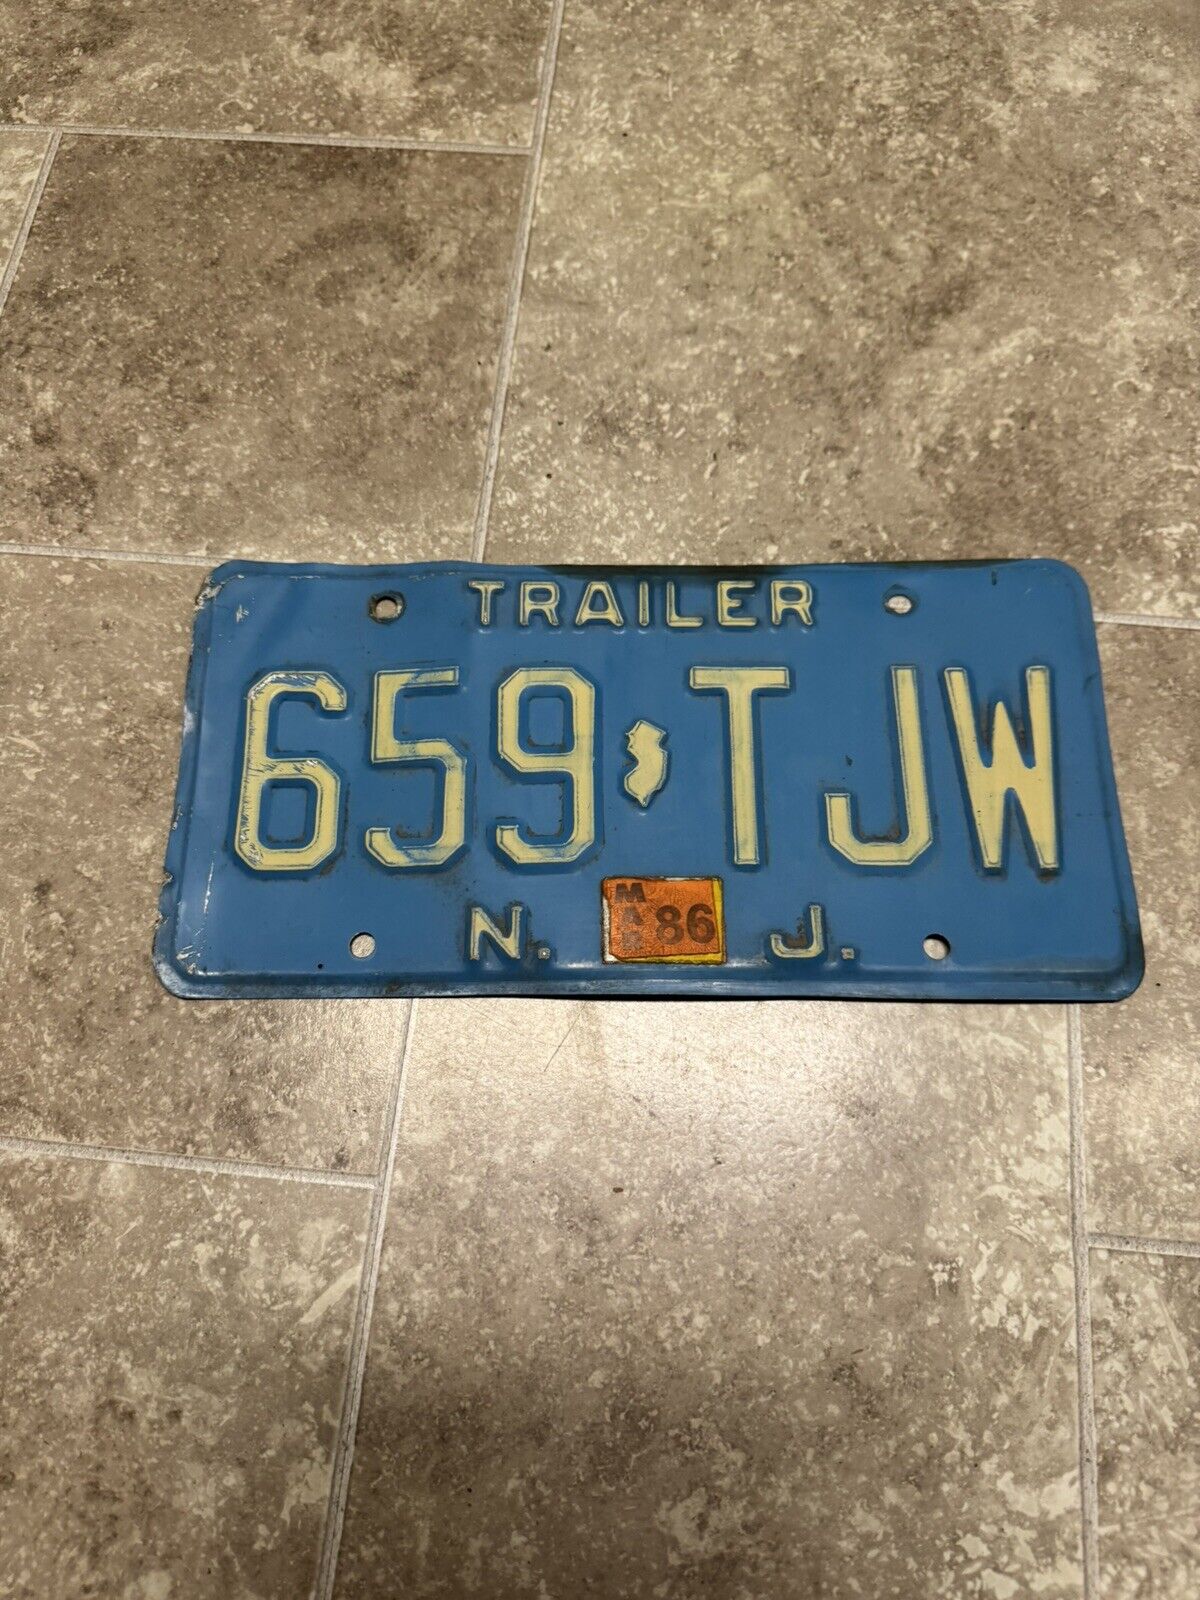 Vintage Blue New Jersey Trailer N.J. License Plate NJ 659 TJW